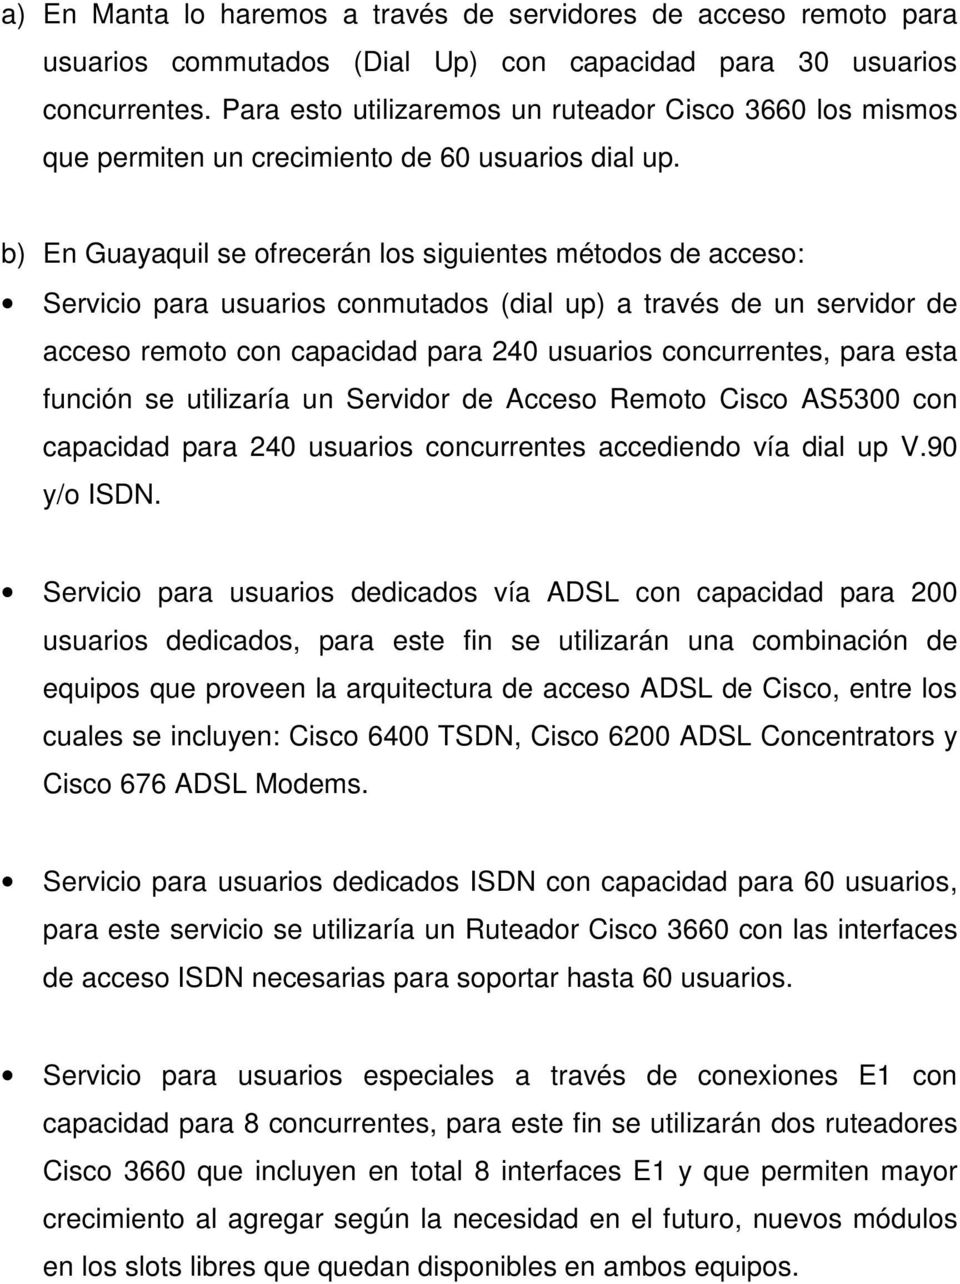 b) En Guayaquil se ofrecerán los siguientes métodos de acceso: Servicio para usuarios conmutados (dial up) a través de un servidor de acceso remoto con capacidad para 240 usuarios concurrentes, para